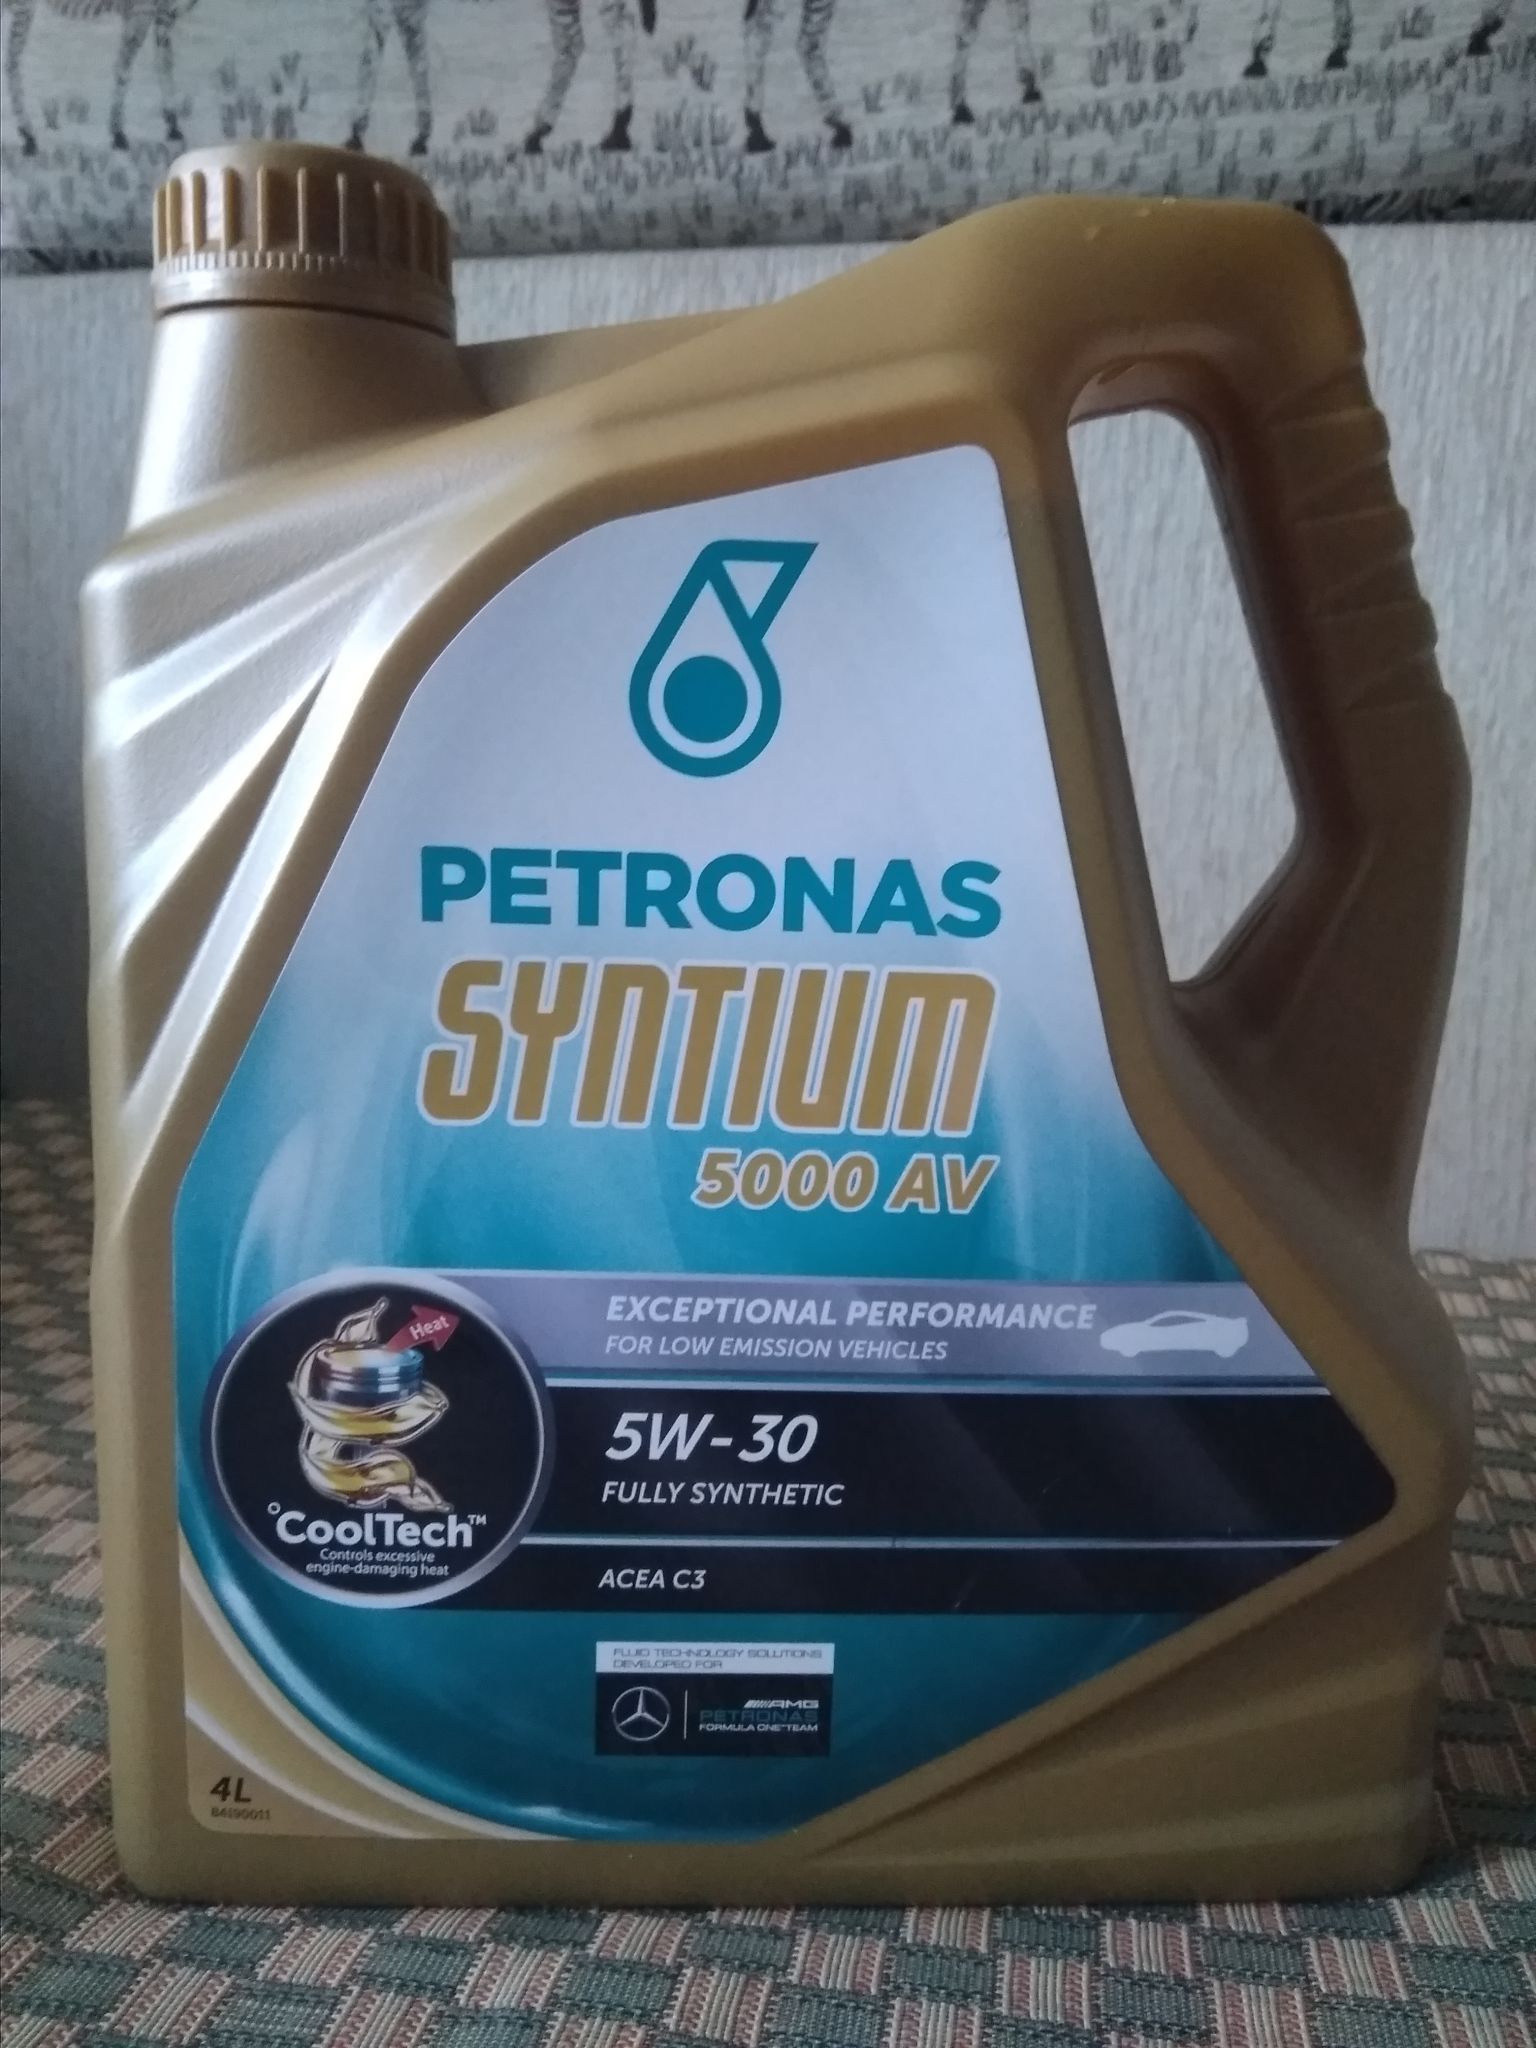 Petronas 5000 av. Petronas 5000 av 5w30. Petronas Syntium 5000 5w30. Petronas Syntium 5000 av 5w-30. Petronas Syntium 5000 XS 5w30.